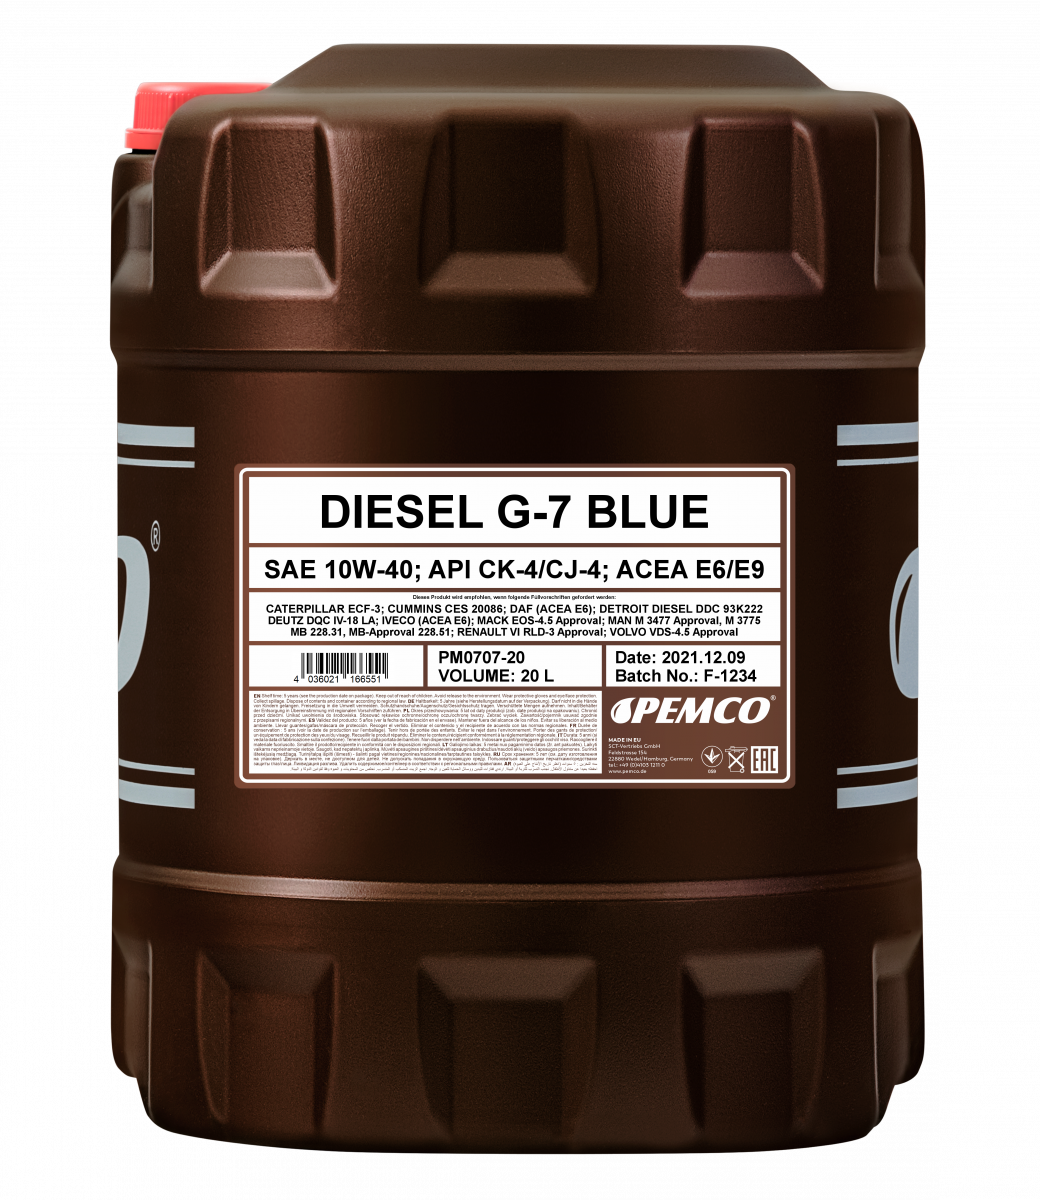 Моторное масло PEMCO DIESEL G-7 UHPD BLUE 10W-40 CK-4/CJ-4 синтетическое, 20л (PM0707-20)